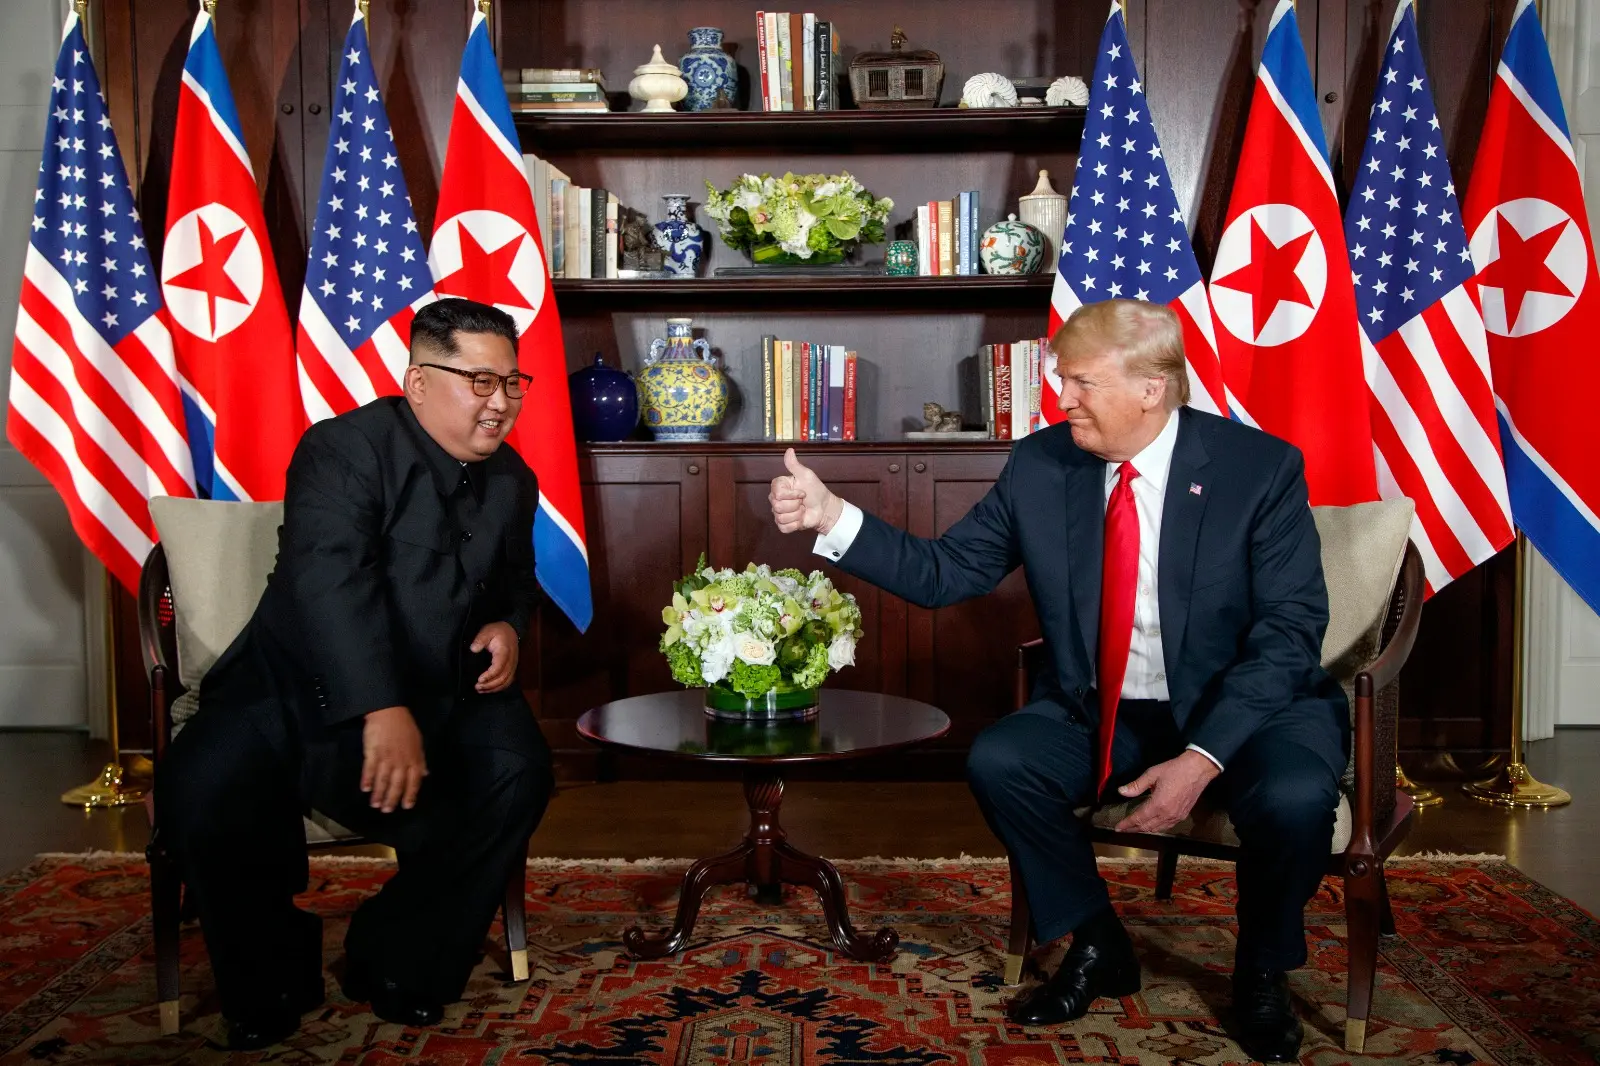 נשיא ארה"ב טראמפ ומנהיג קוריאה הצפונית קים ג'ונג און בפסגה בסינגפור, 12 ביוני 2018